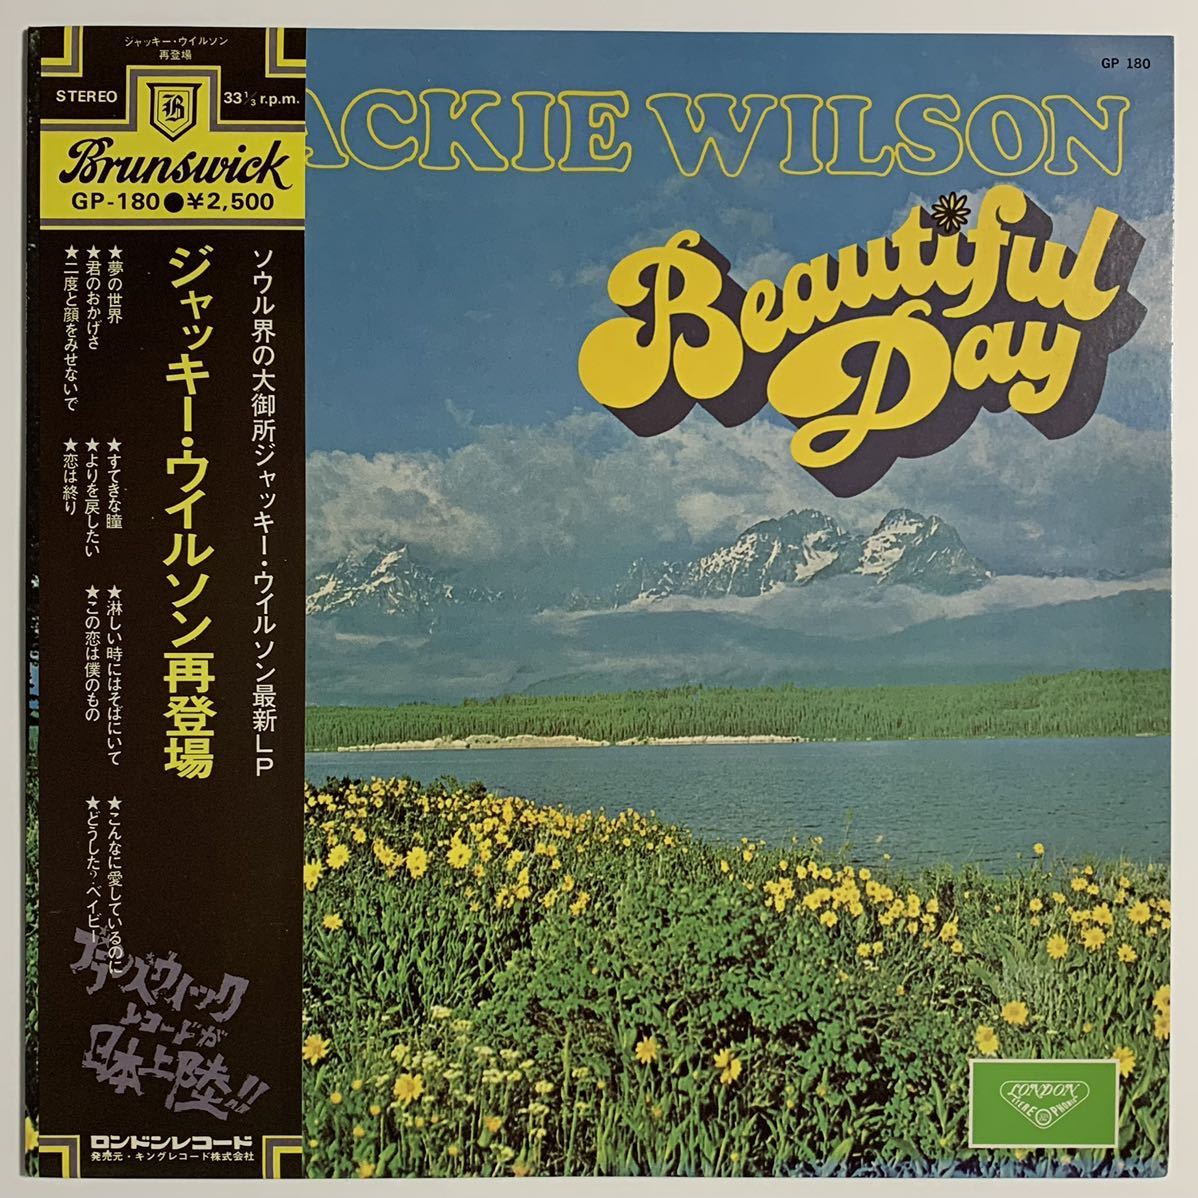 レア 帯付/国内盤/Jackie Wilson/Beautiful Day/ジャッキー・ウイルソン 再登場/GP-180/London Records/1976年/LP/レコード